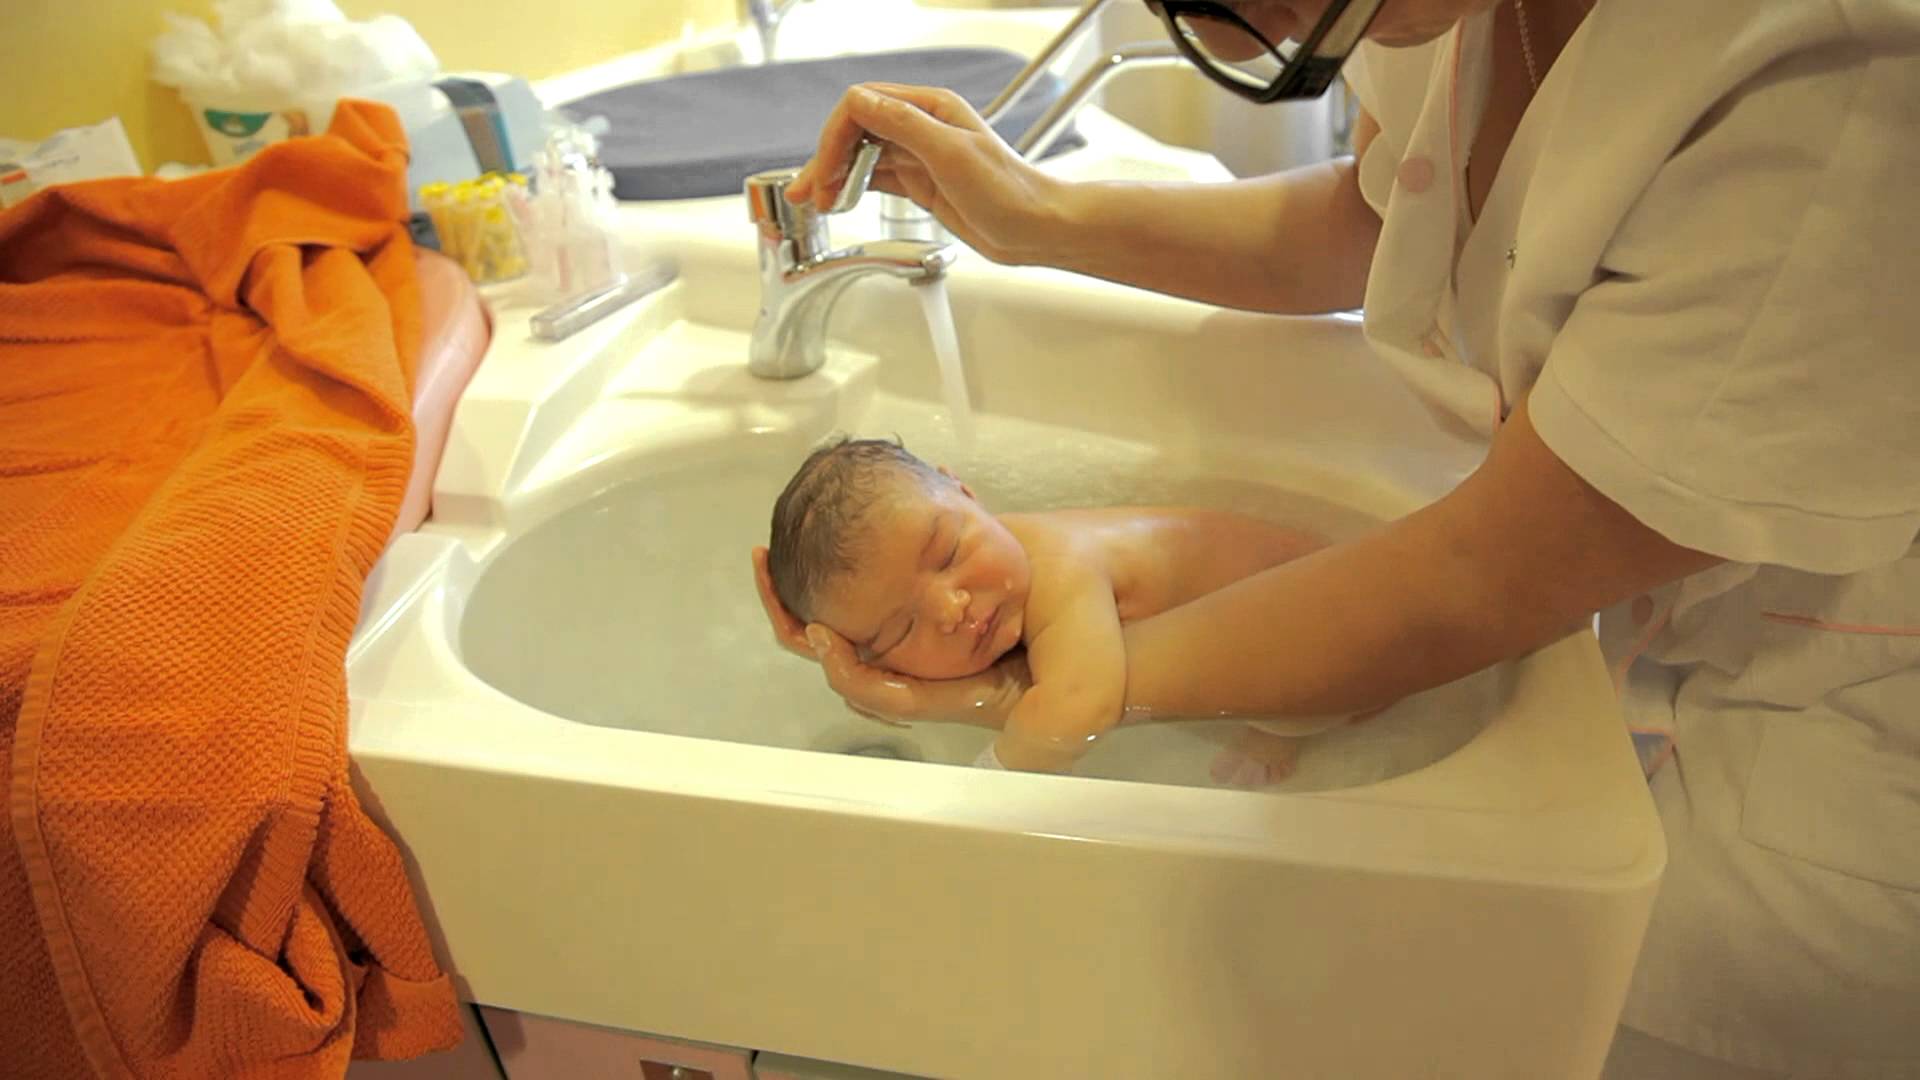 Первая гигиеническая ванна. Подмывание ребенка в раковине. Раковина для подмывания младенцев. Гигиеническая ванна ребенка. Купание новорожденного ребенка в роддоме.